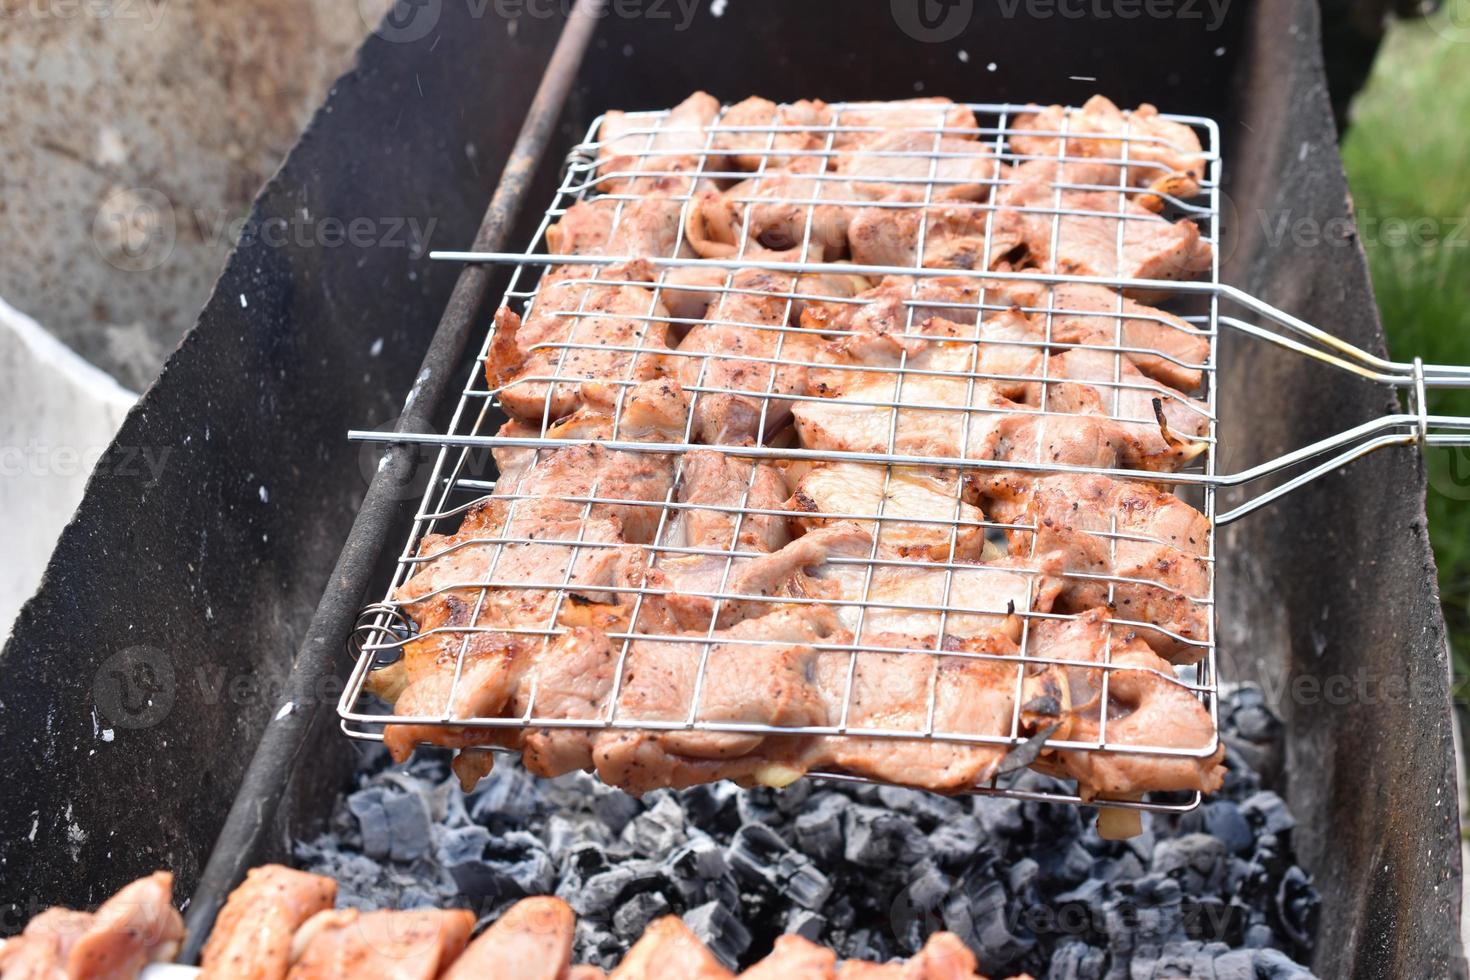 gegrild varkensvlees in een barbecuenet met kruiden foto